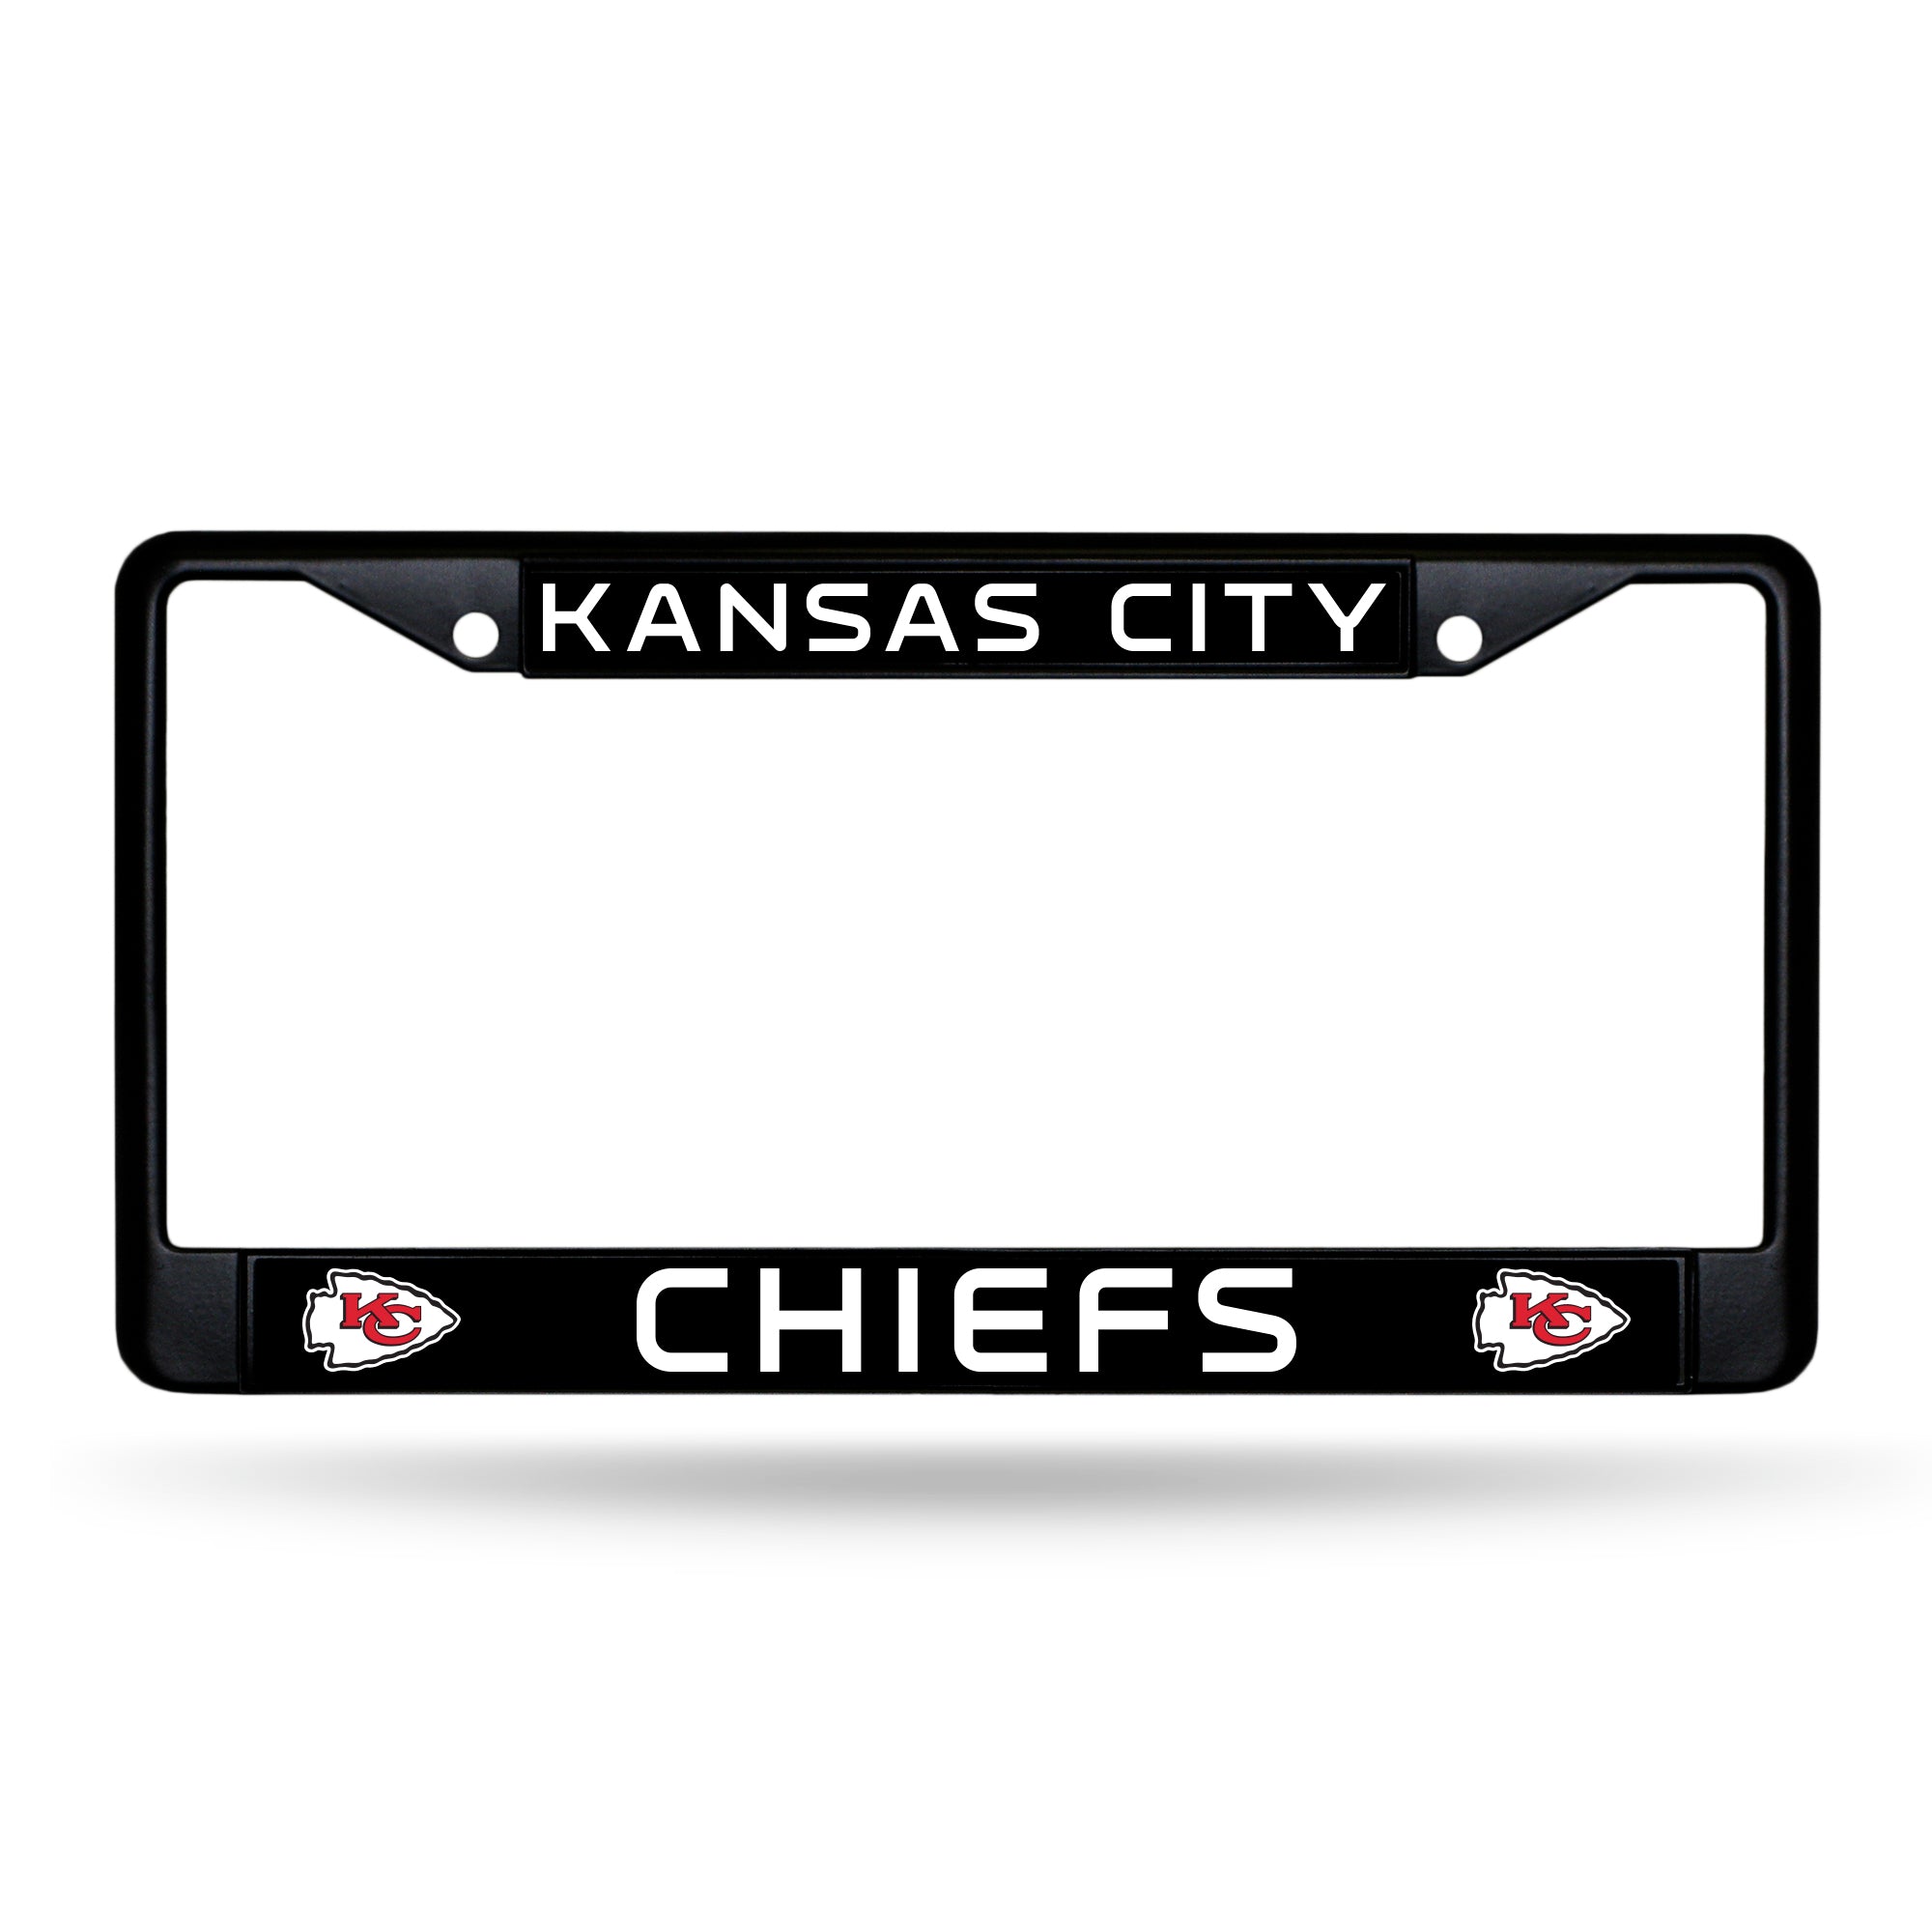 Kansas City Chiefs Black License Plate Frame